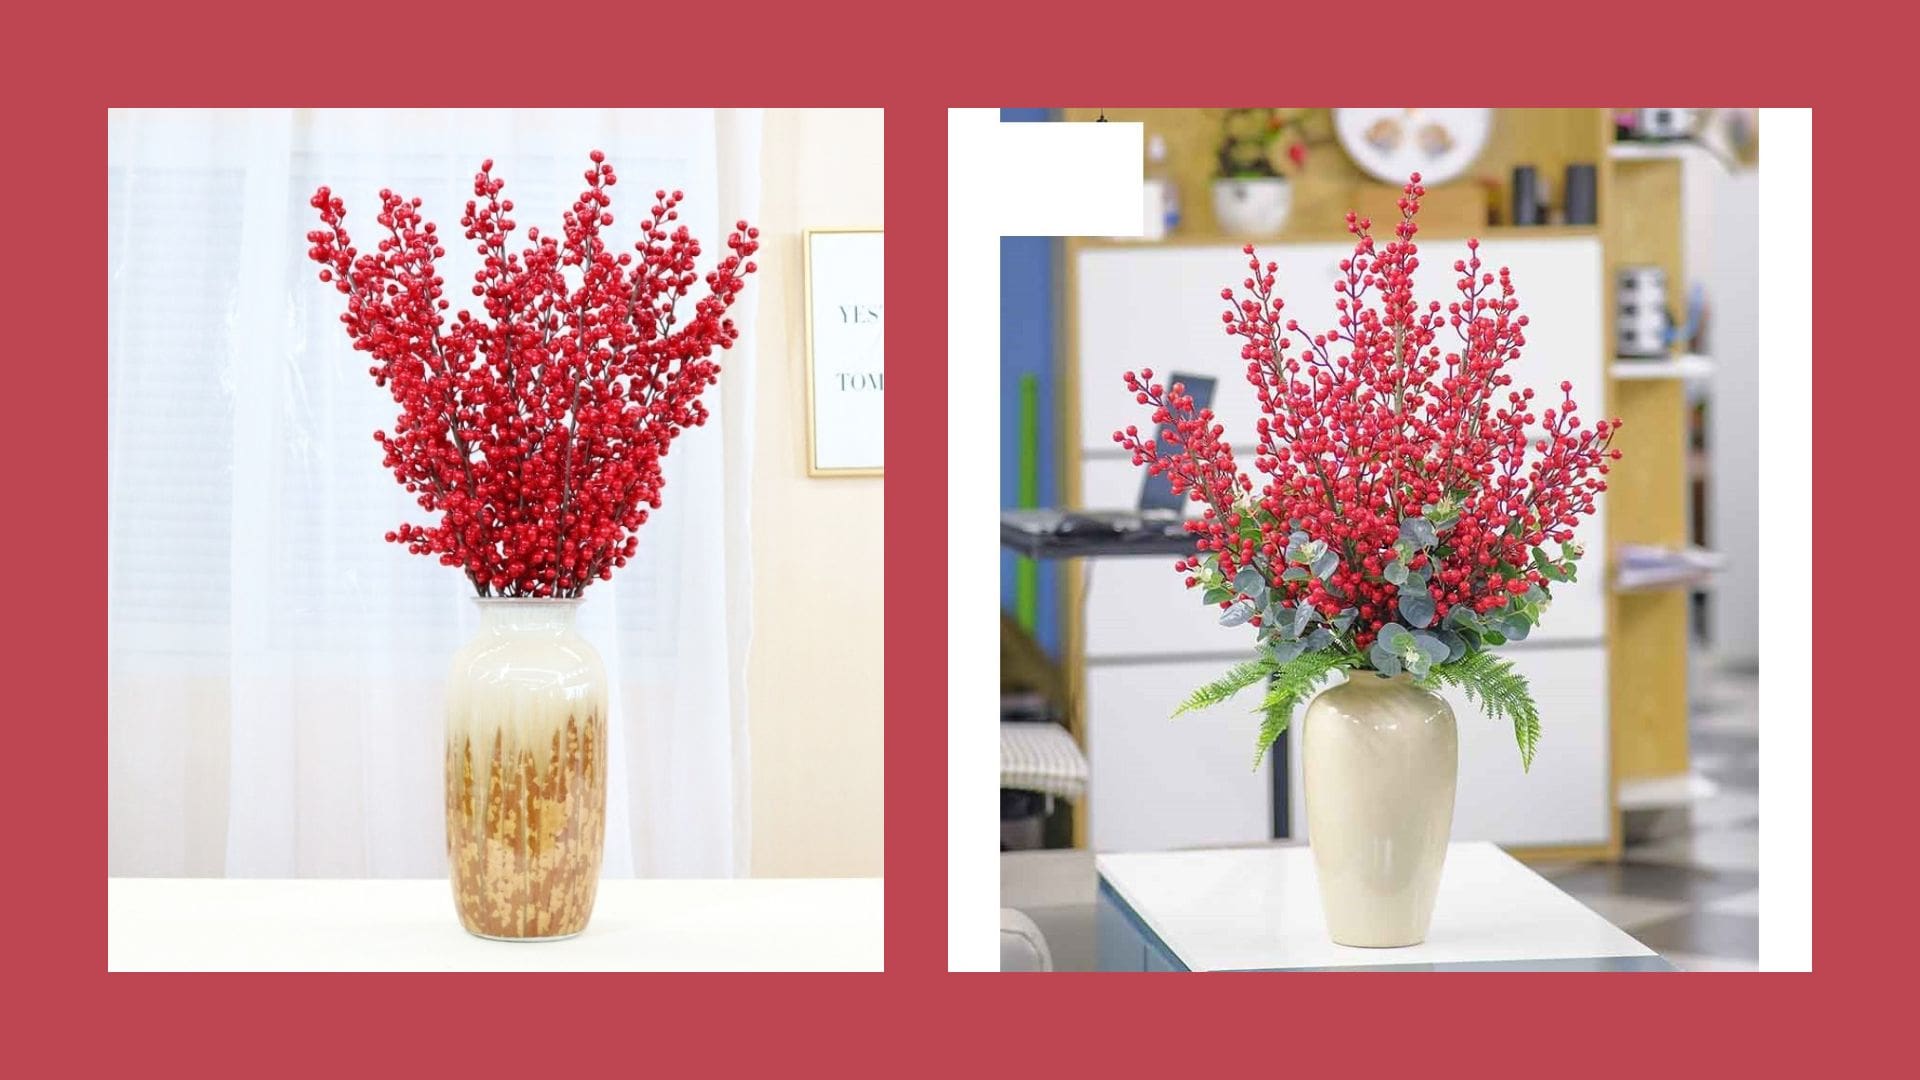 Hoa khô Đà Nẵng - Cửa hàng hoa giả Đà Nẵng chất lượng